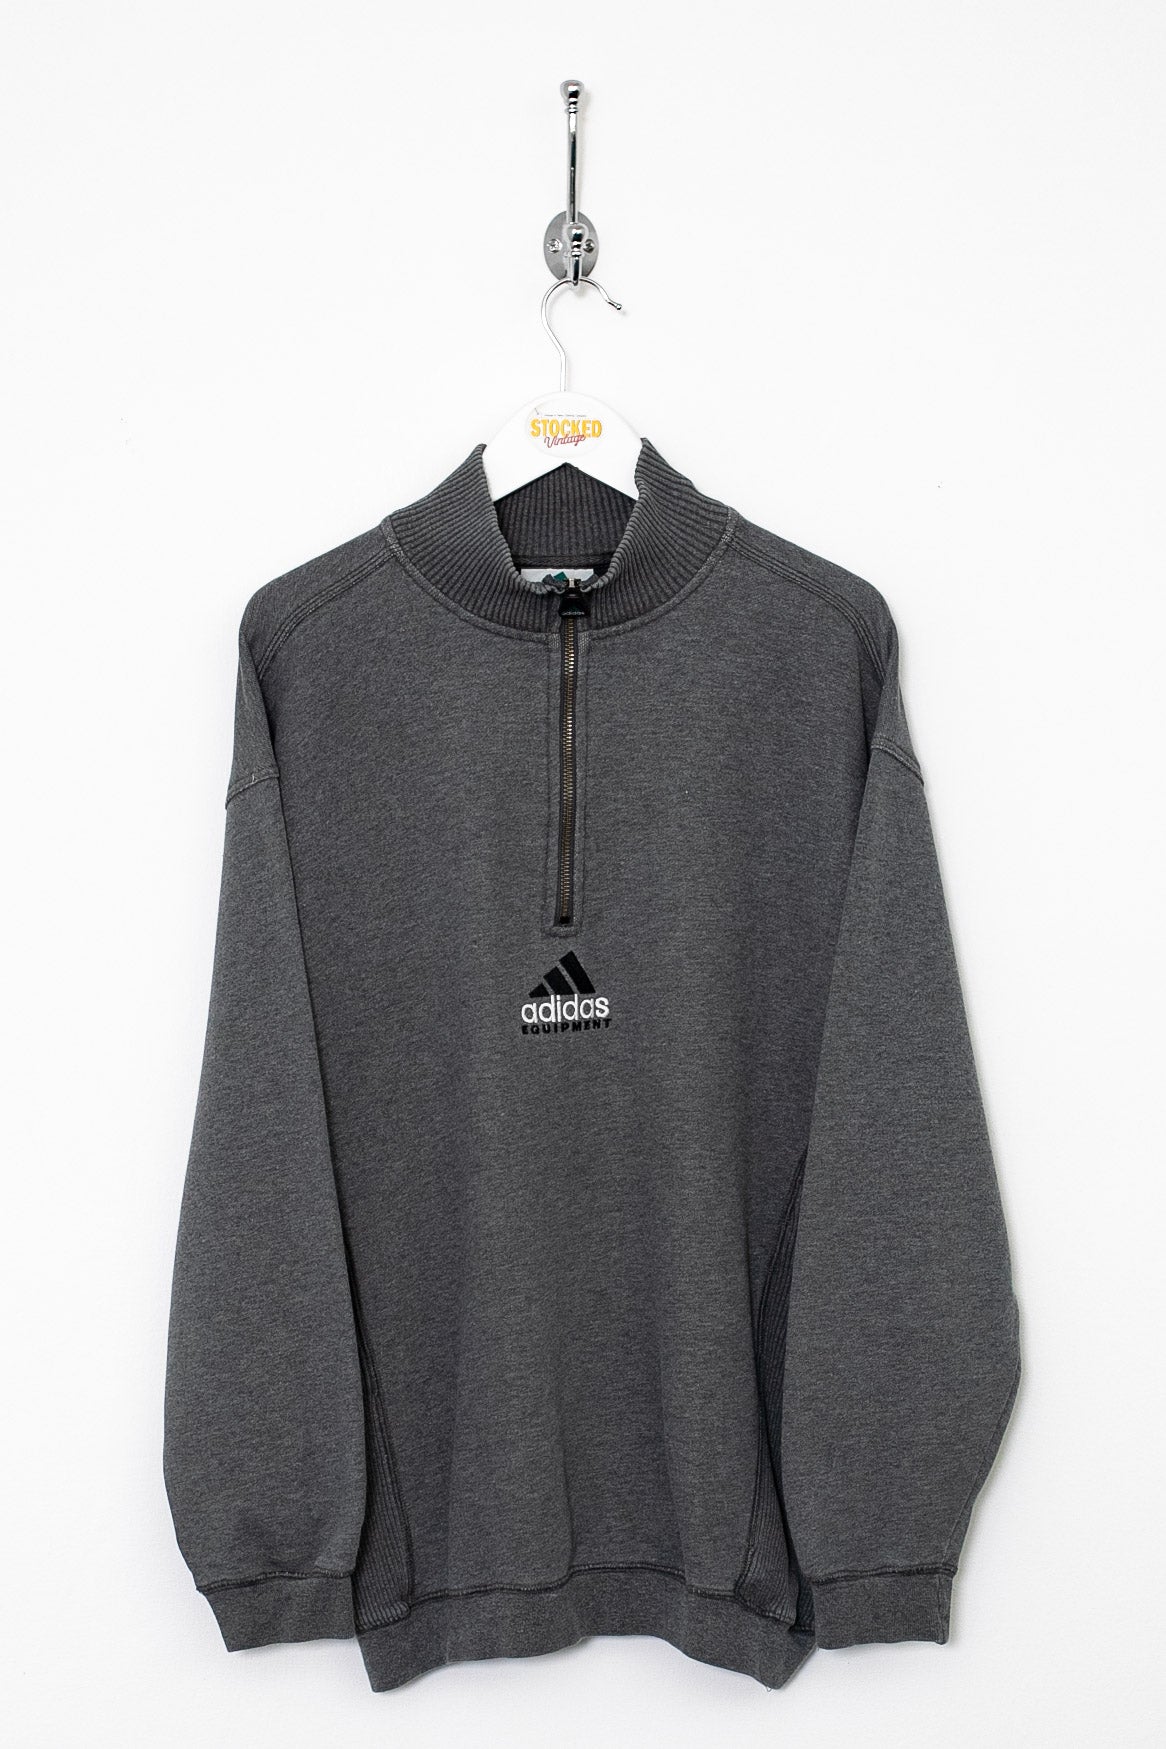 00s Adidas Equipment 1/4 Zip Sweatshirt (L)